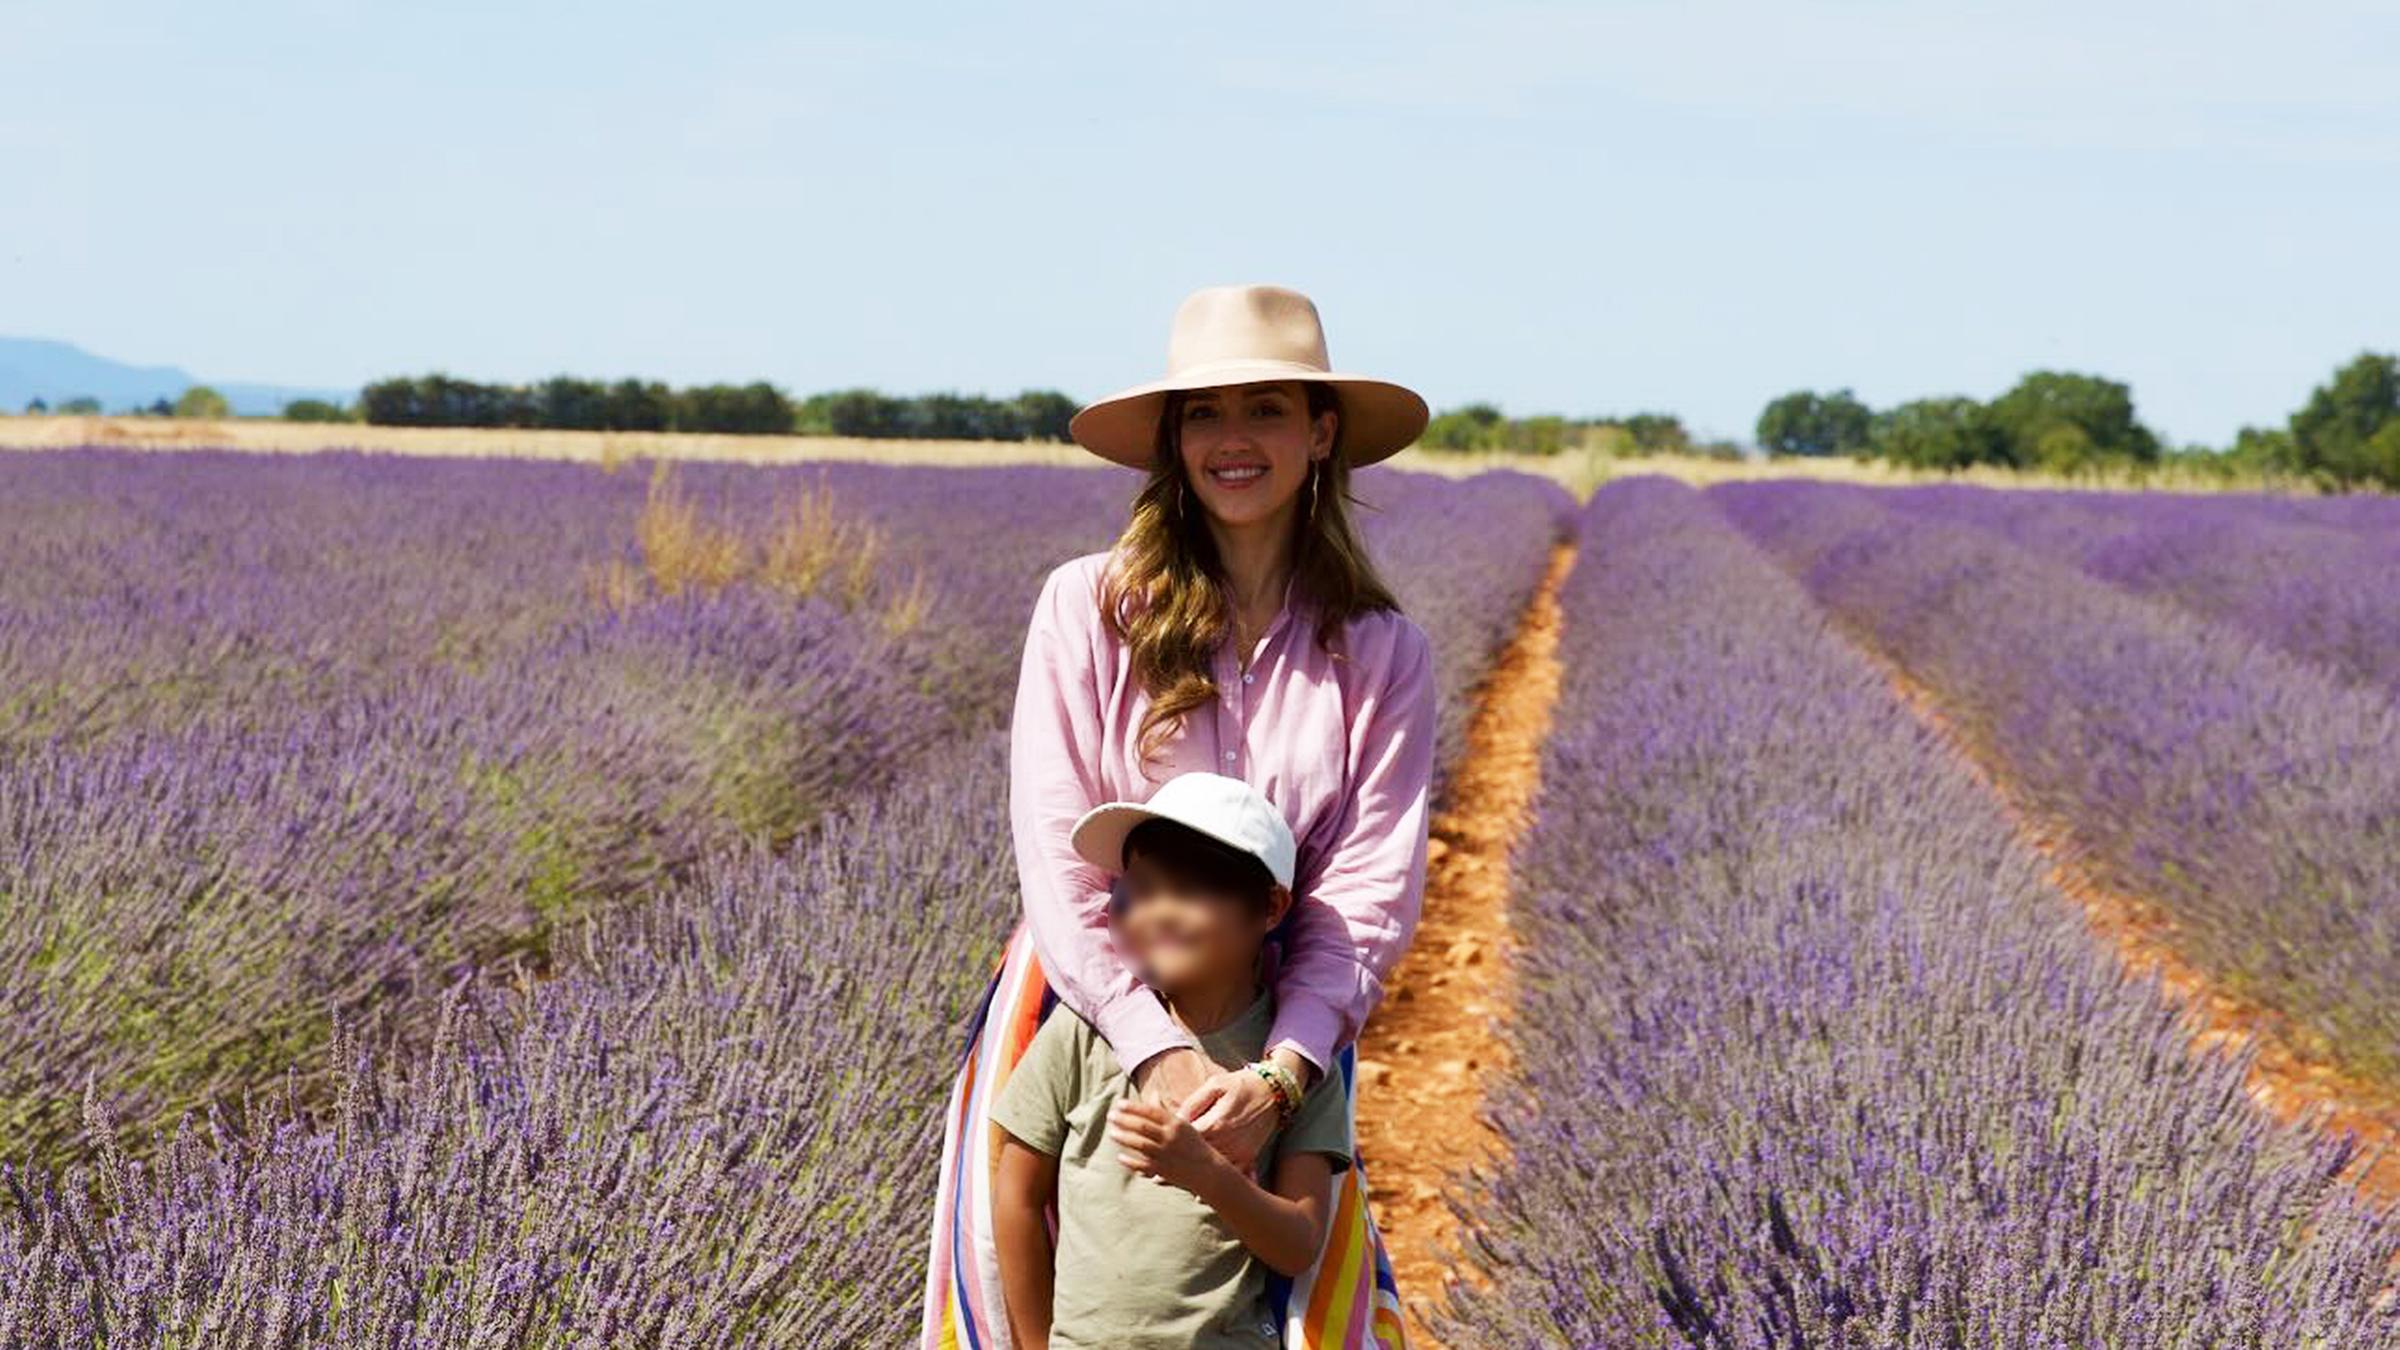 Urlaubsgrüße aus der Provence sendet Jessica Alba. Sie ist mit ihrer Familie in die Provence gereist. Der Duft in den Lavendelfeldern sei nicht von dieser Welt, schreibt sie dazu. (01.08.2024)